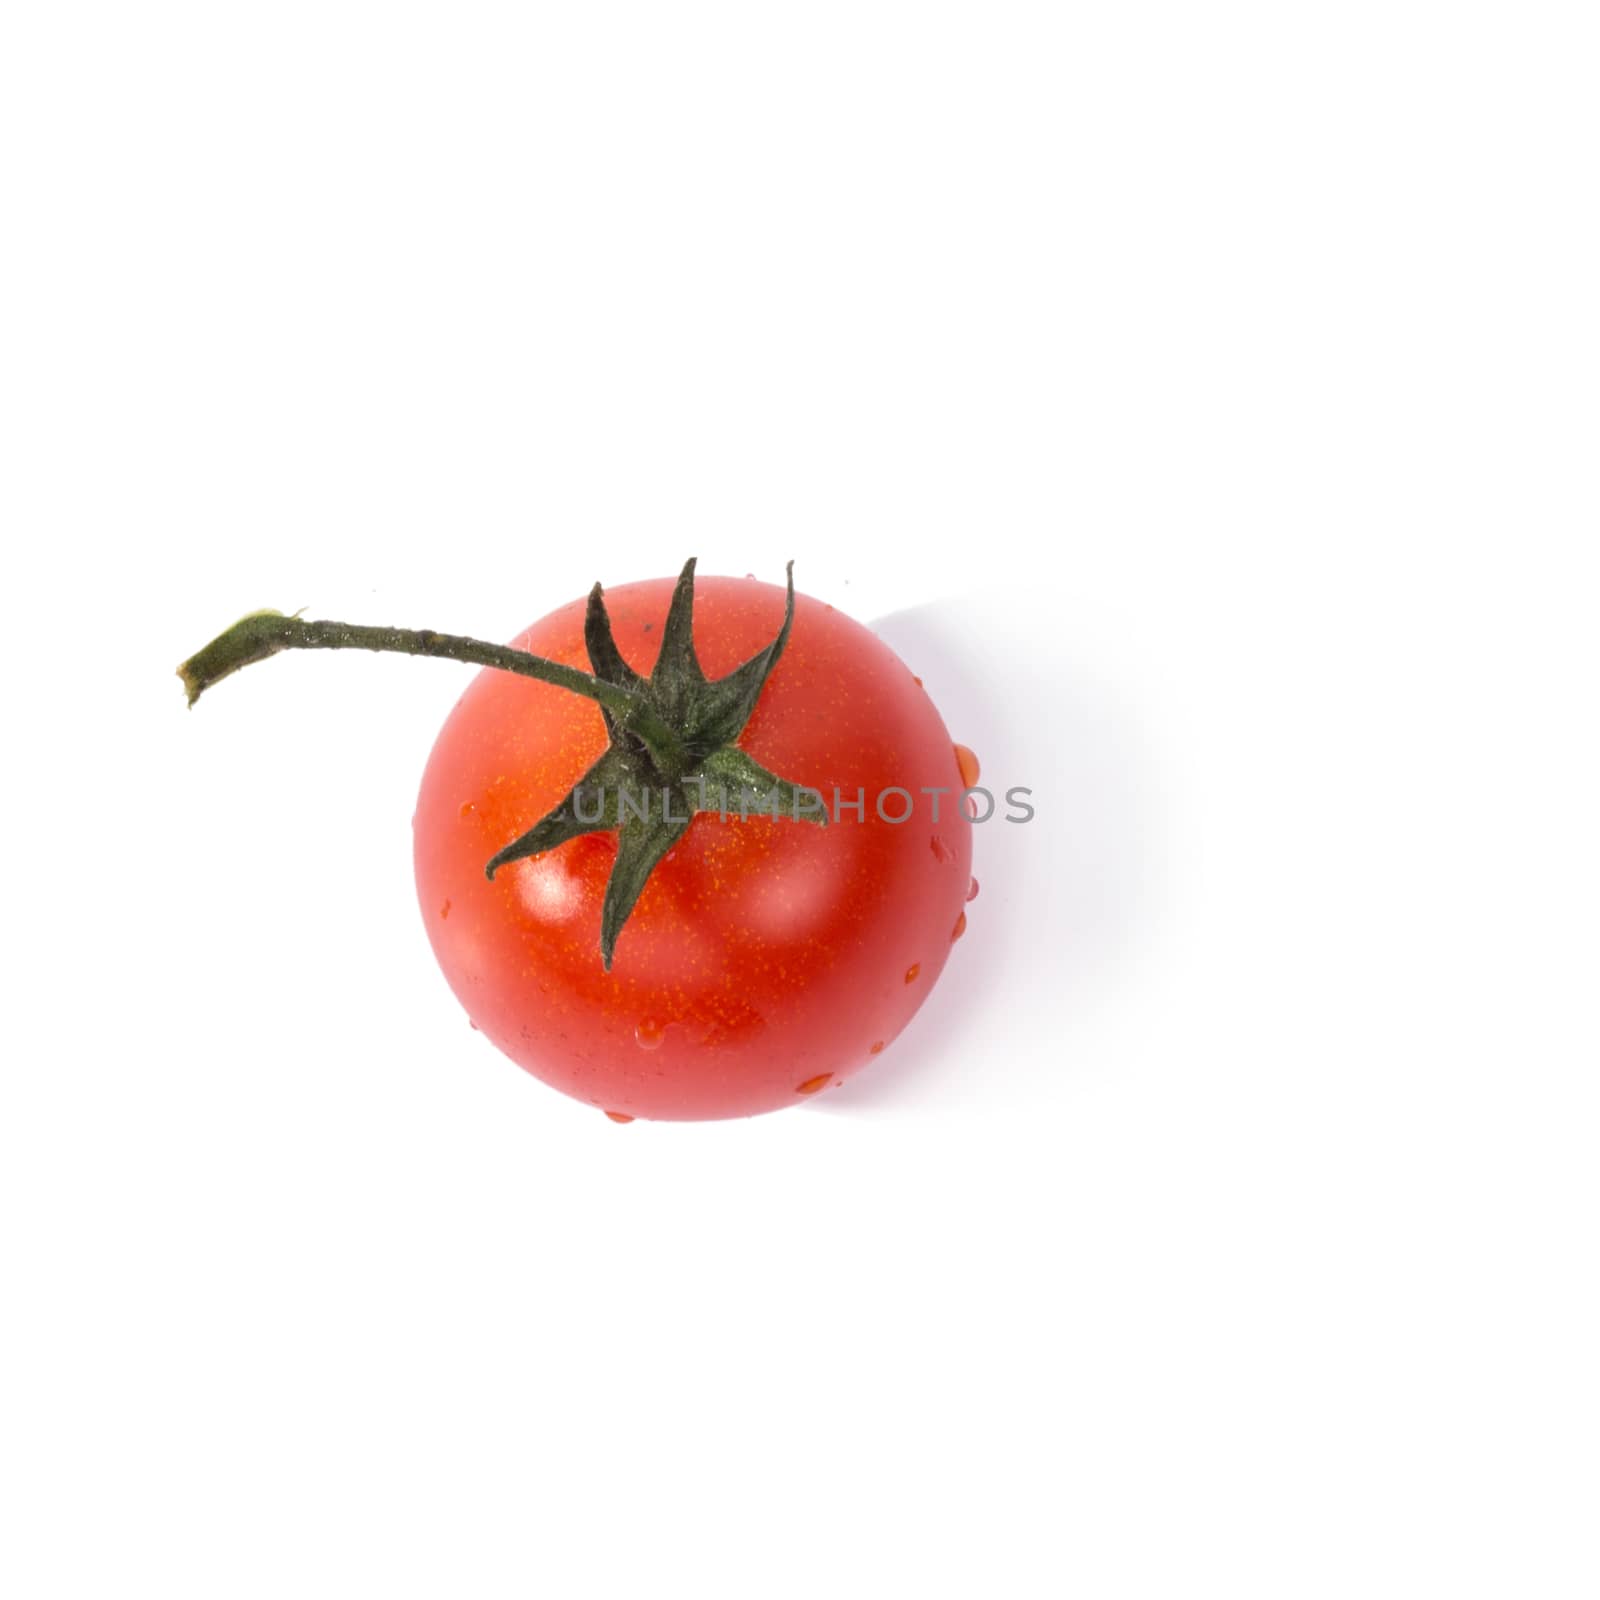 Red tomato by rufatjumali